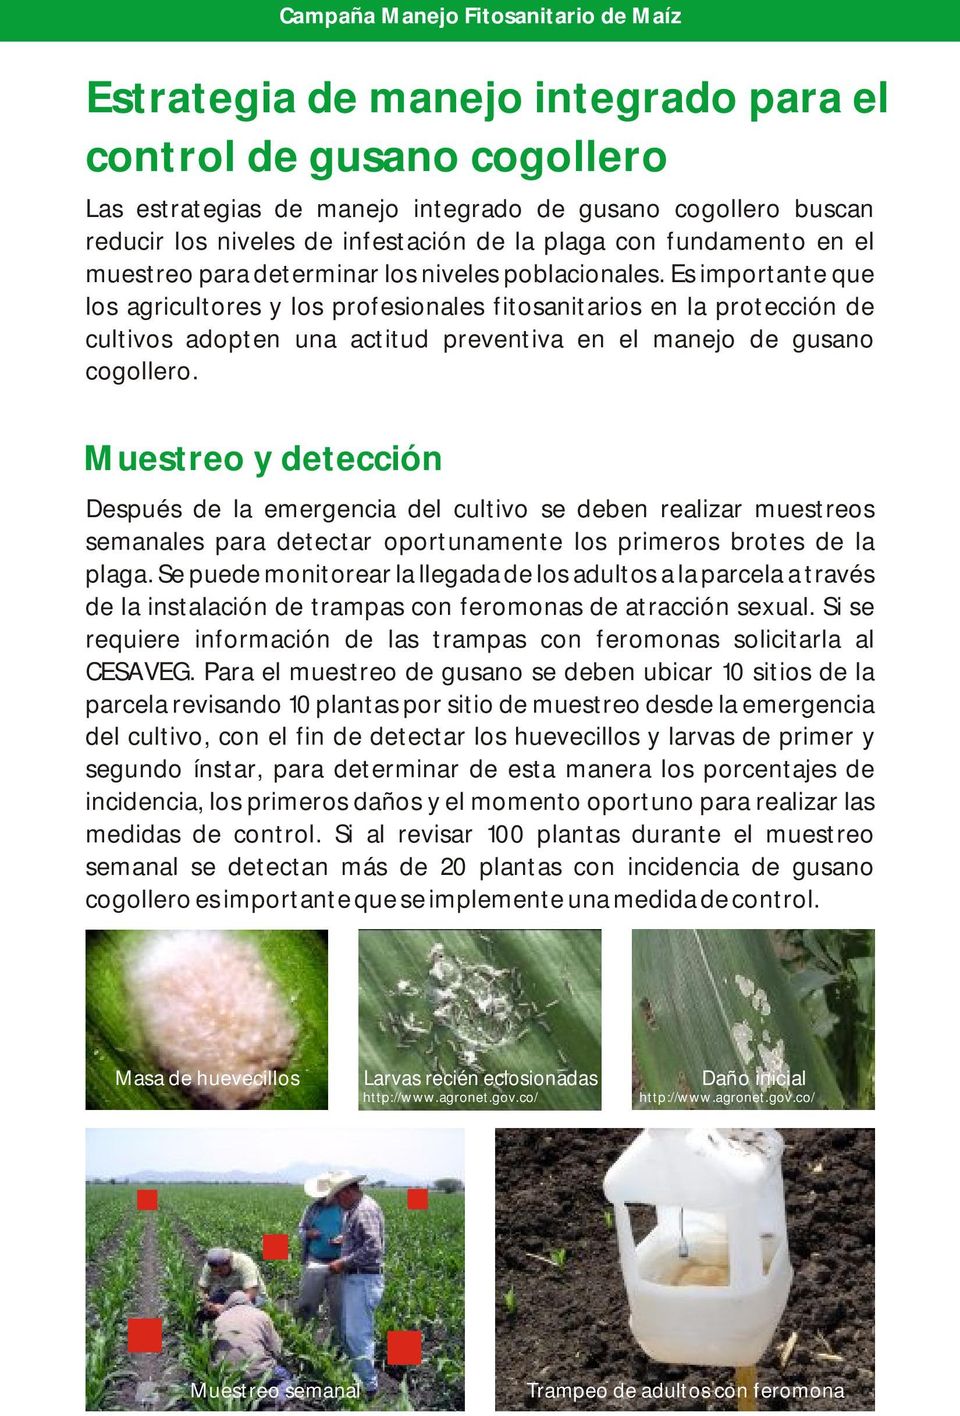 Es importante que los agricultores y los profesionales fitosanitarios en la protección de cultivos adopten una actitud preventiva en el manejo de gusano cogollero.